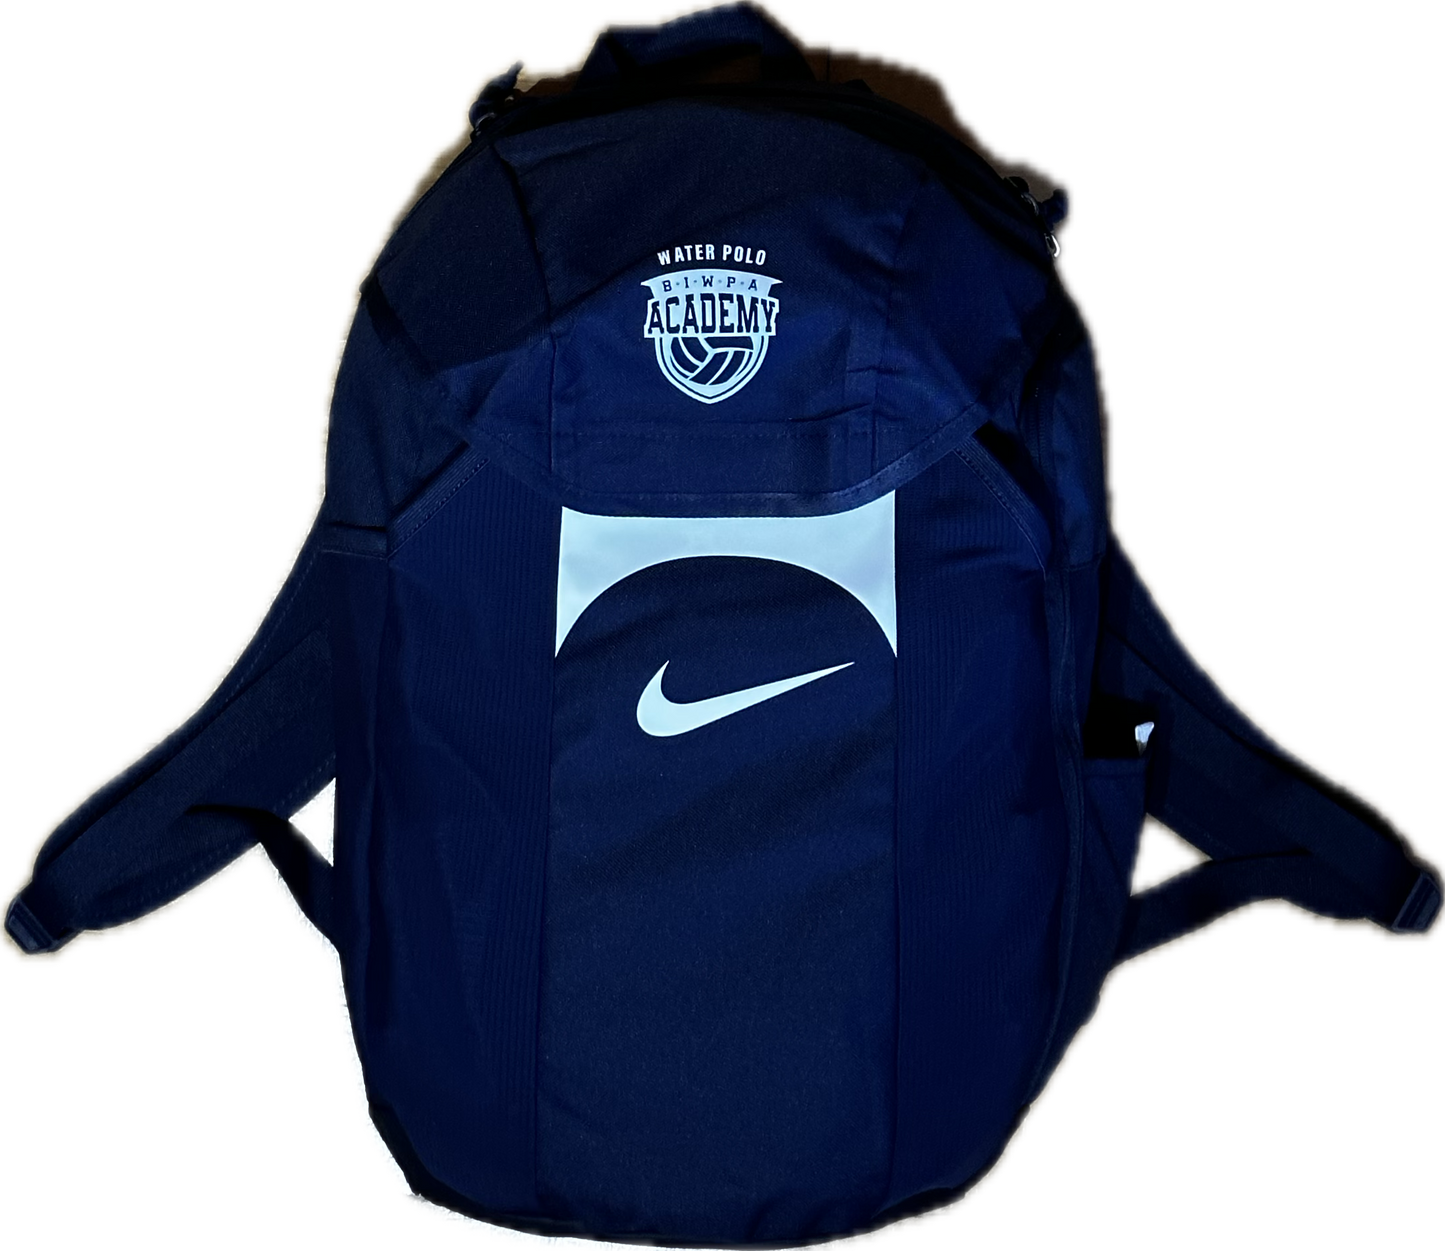 Nike x BIWPA Backpack